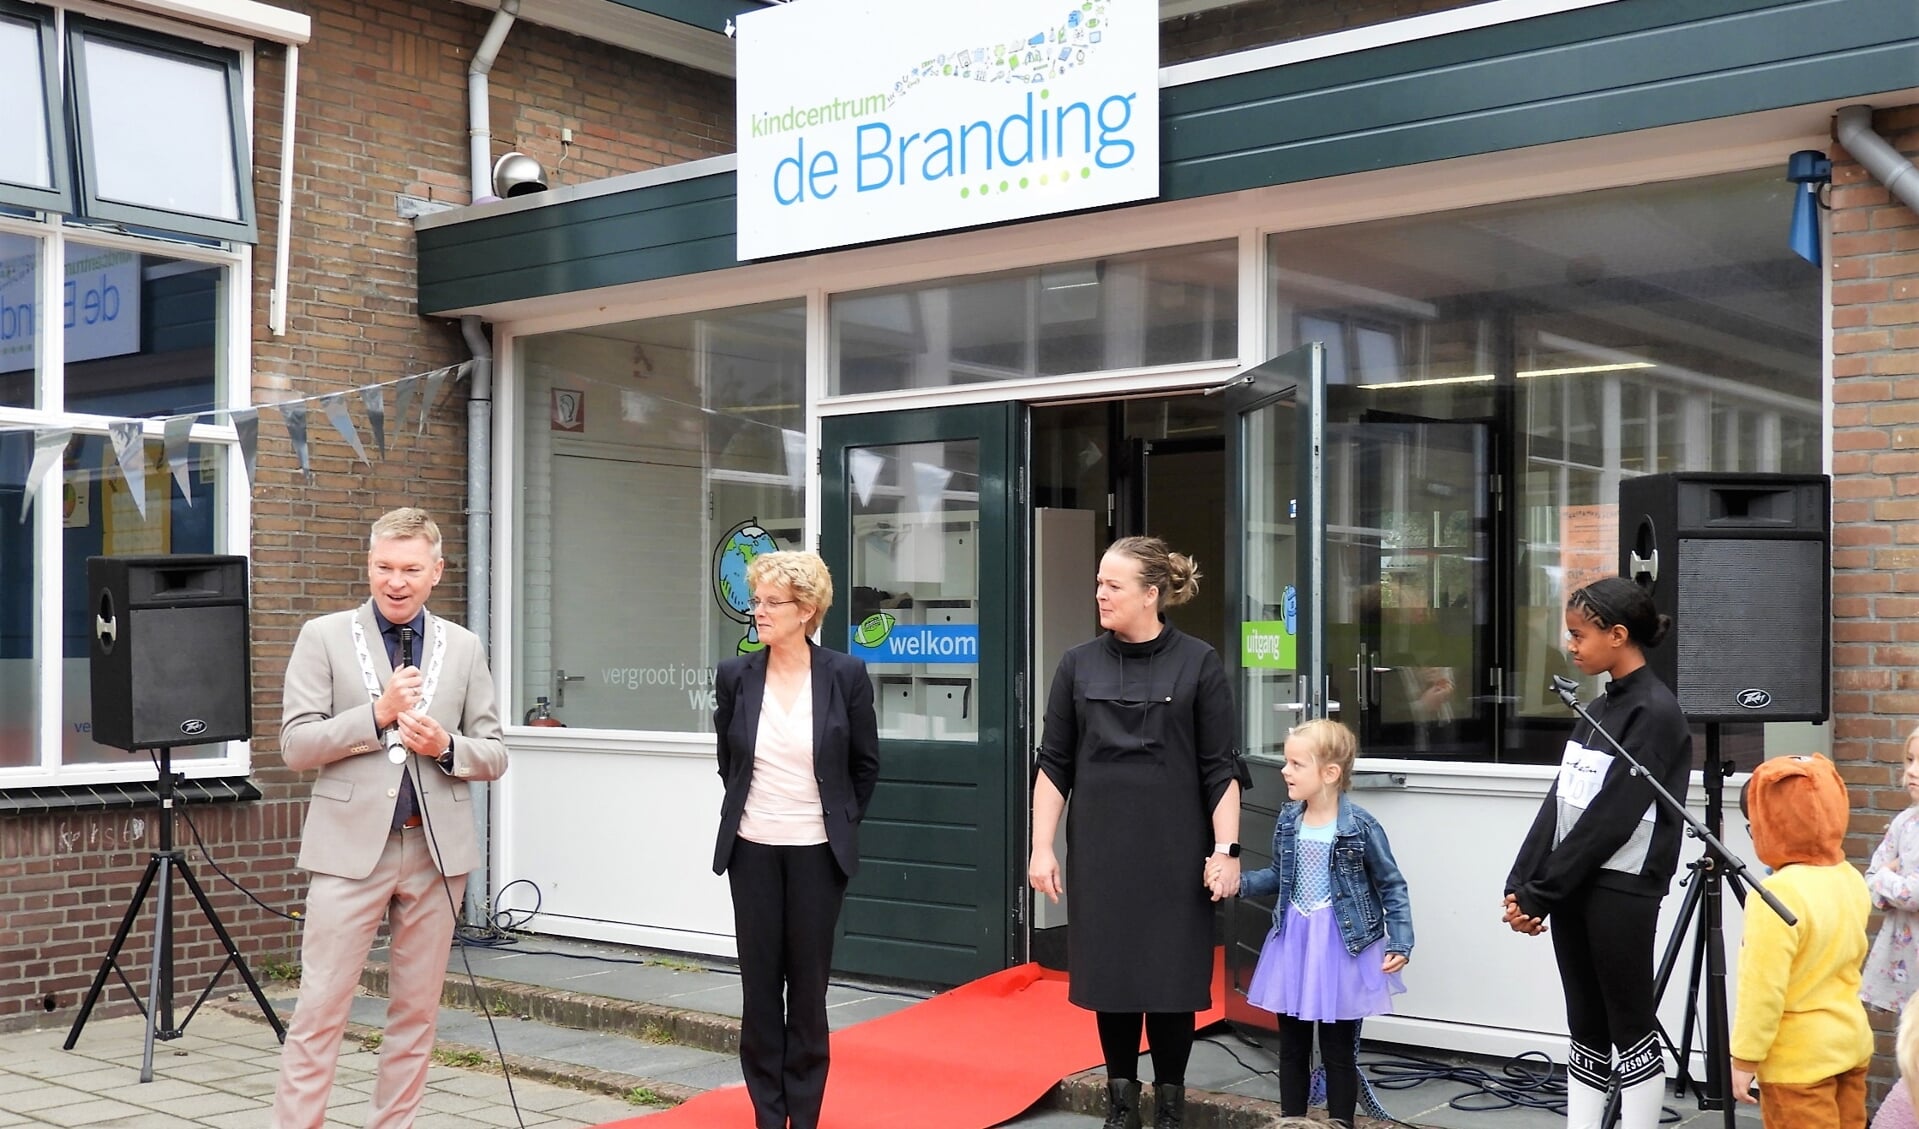 Burgemeester Rehwinkel, bestuursvoorzitter Carla Smits en directeur Mariëlle Schipper bij de opening van kindcentrum De Branding in Egmond aan Zee.